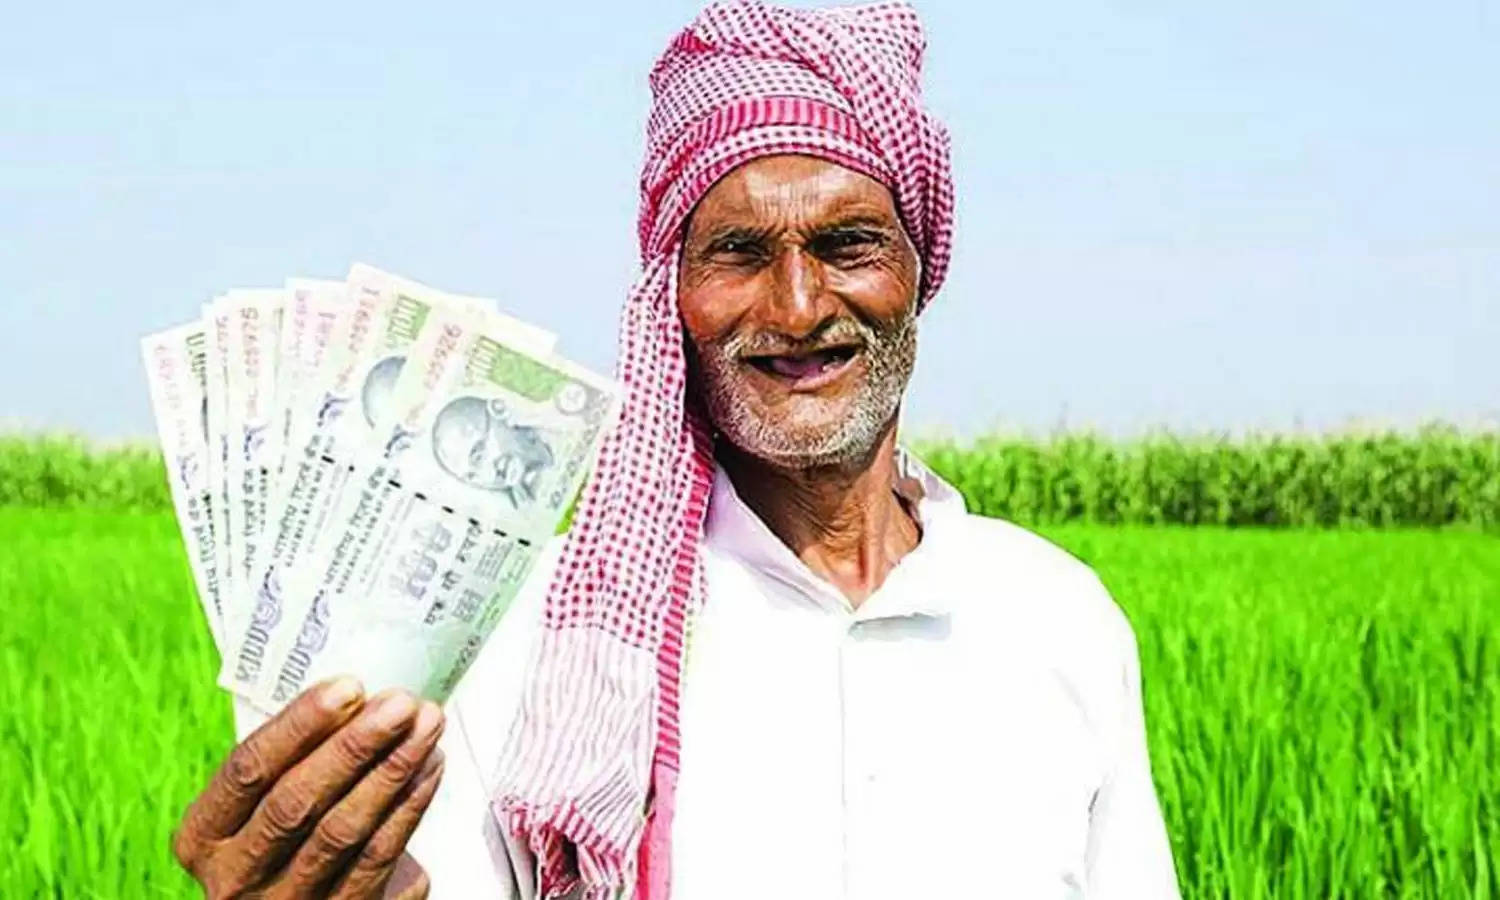 पंजाब नेशनल बैंक की स्कीम ने मचाया ऐसा गदर कि किसानों को मिल रहा 2 लाख रुपये का लाभ, जानिए डिटेल